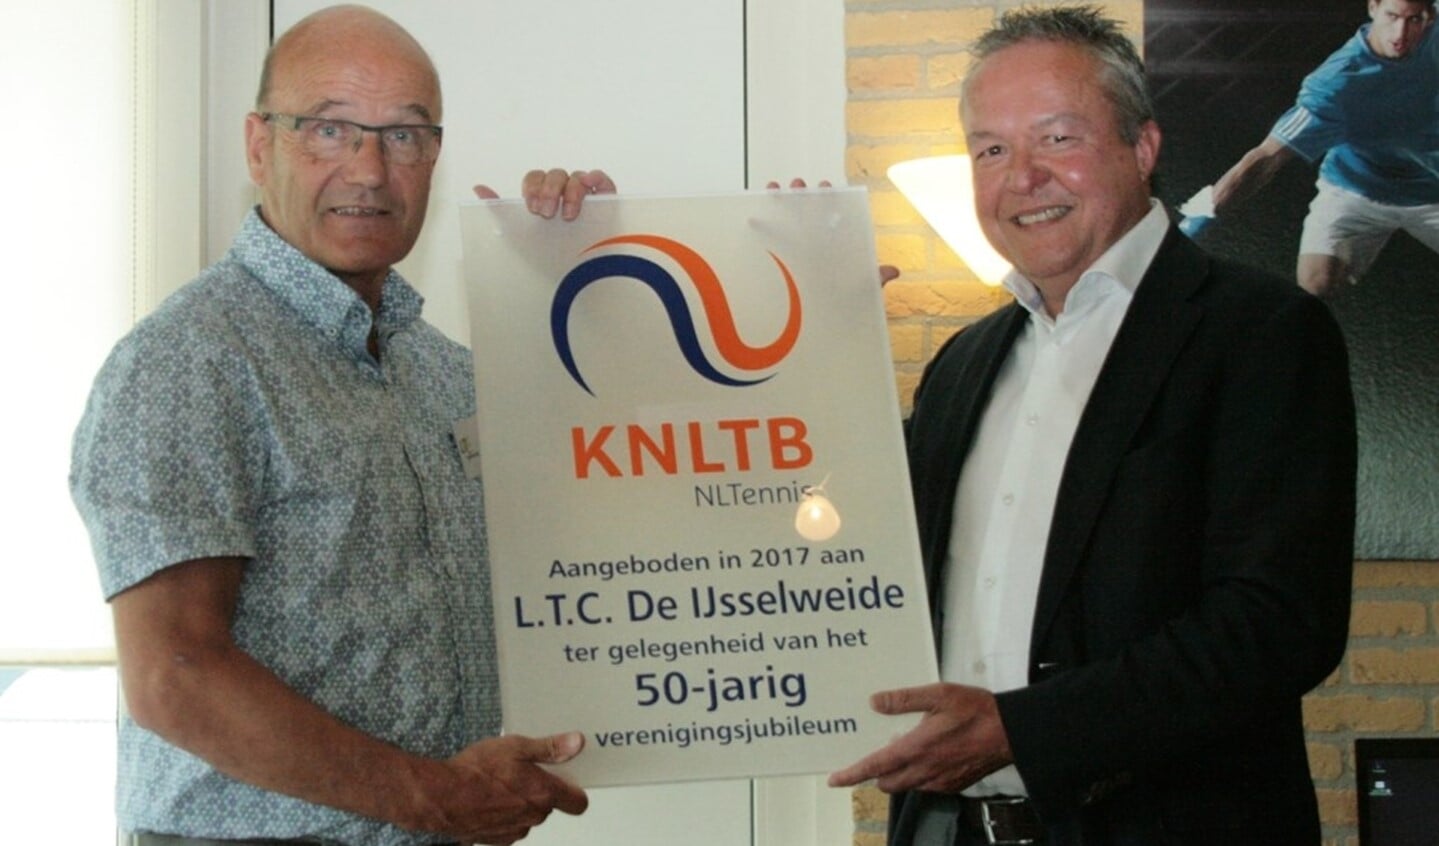  KNLTB bestuurder Kouters overhandigt een plaquette aan voorzitter Jos Brom van de IJsselweide. foto Tine te Brummelstroet.